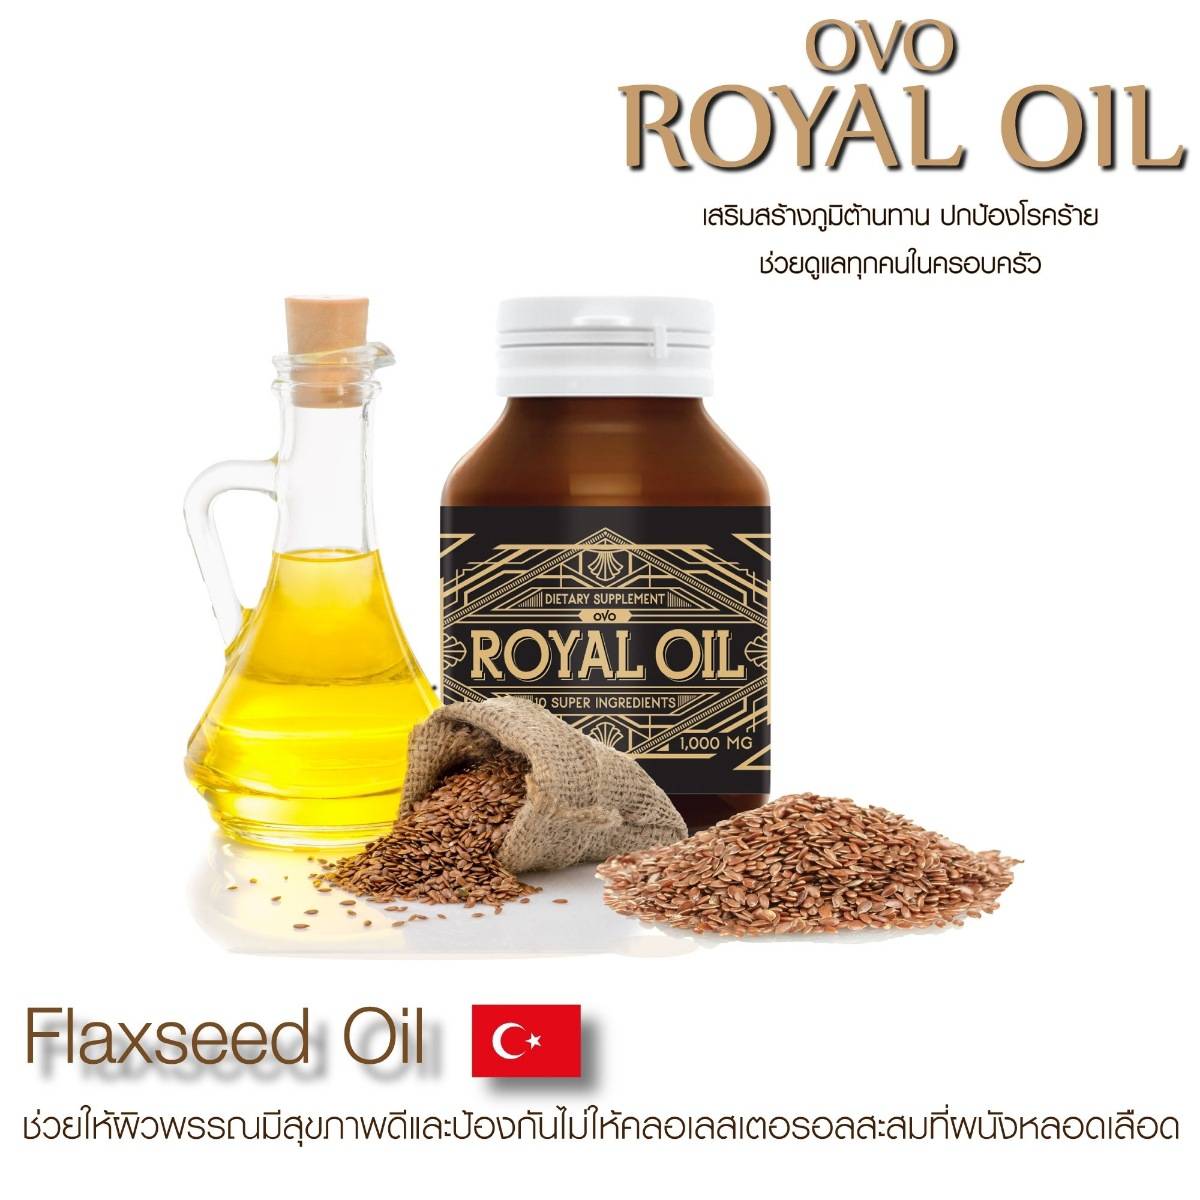 ส่วนประกอบ royal oil รอยัลออย 8